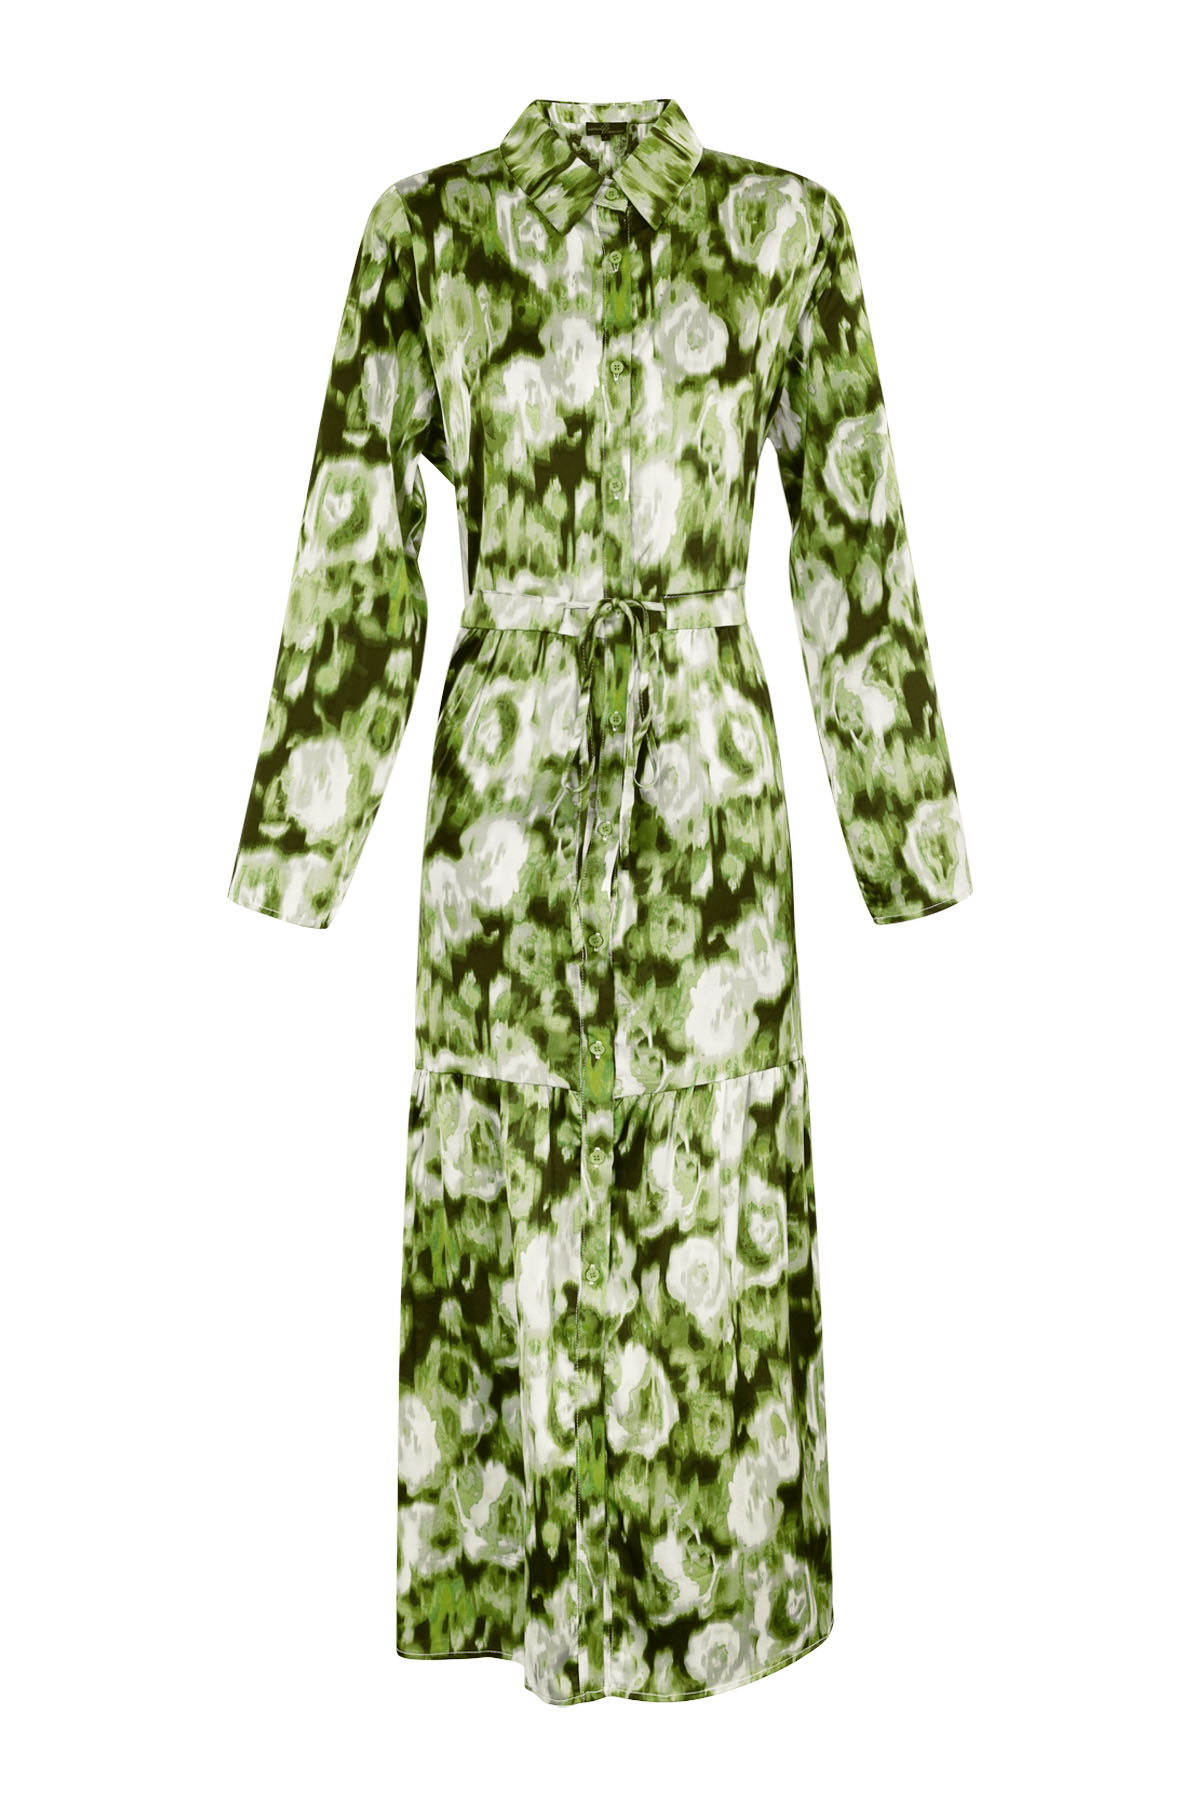 Maxi dress floral print green